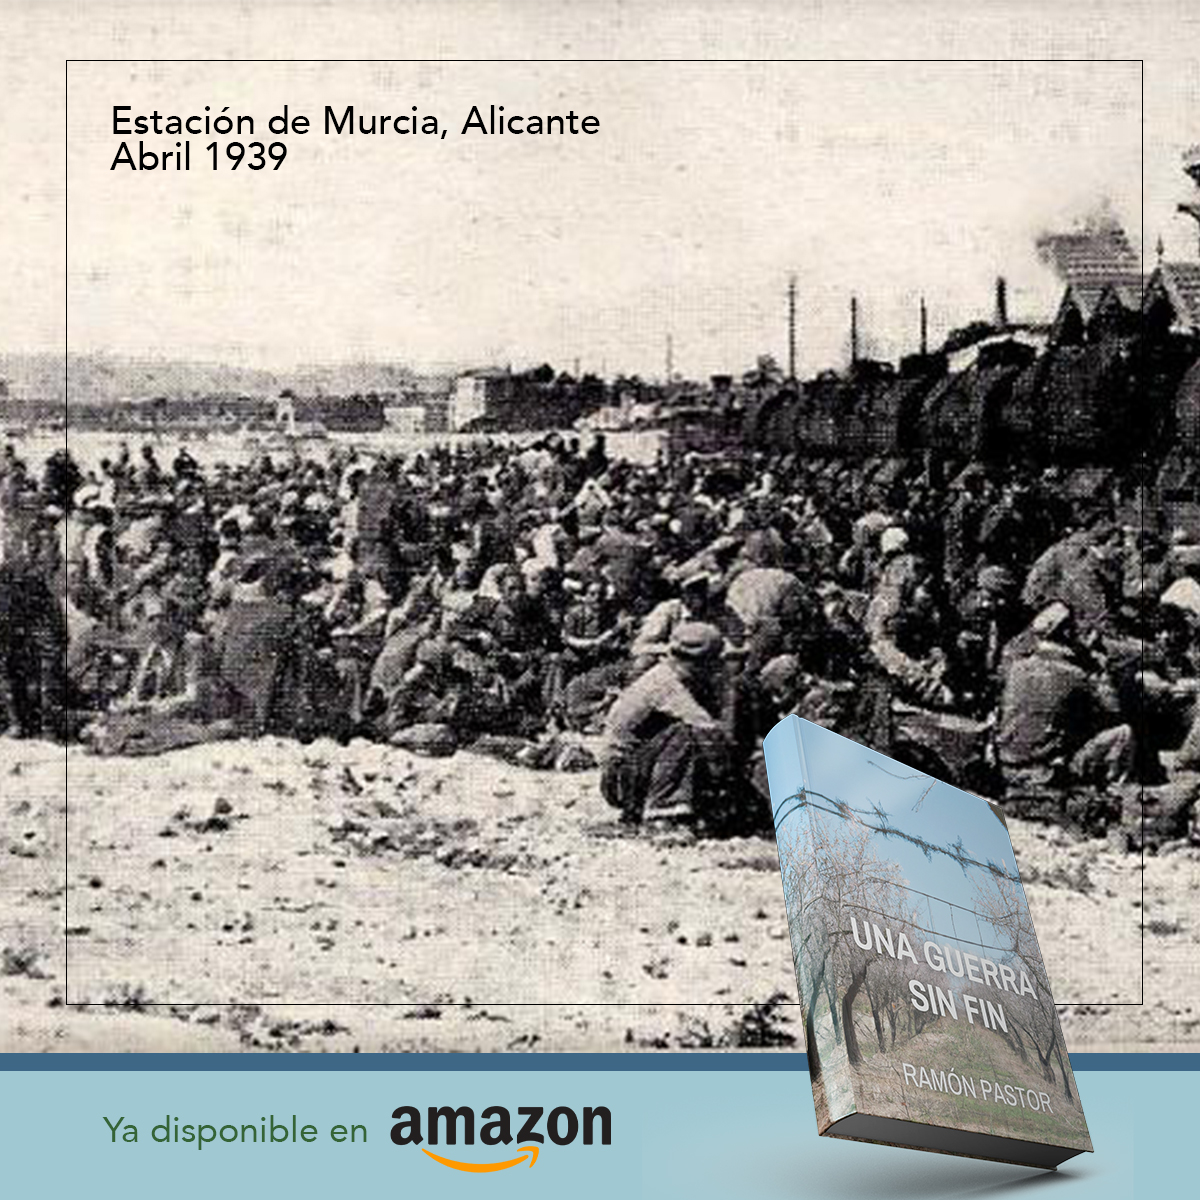 🚂🔗 Abril 1939, Alicante: Prisioneros republicanos fueron reunidos en la estación de Murcia para ser enviados a campos de concentración. Un capítulo oscuro que subraya la brutalidad de la posguerra española. #HistoriaDeAlicante #MemoriaHistórica #GuerraCivil